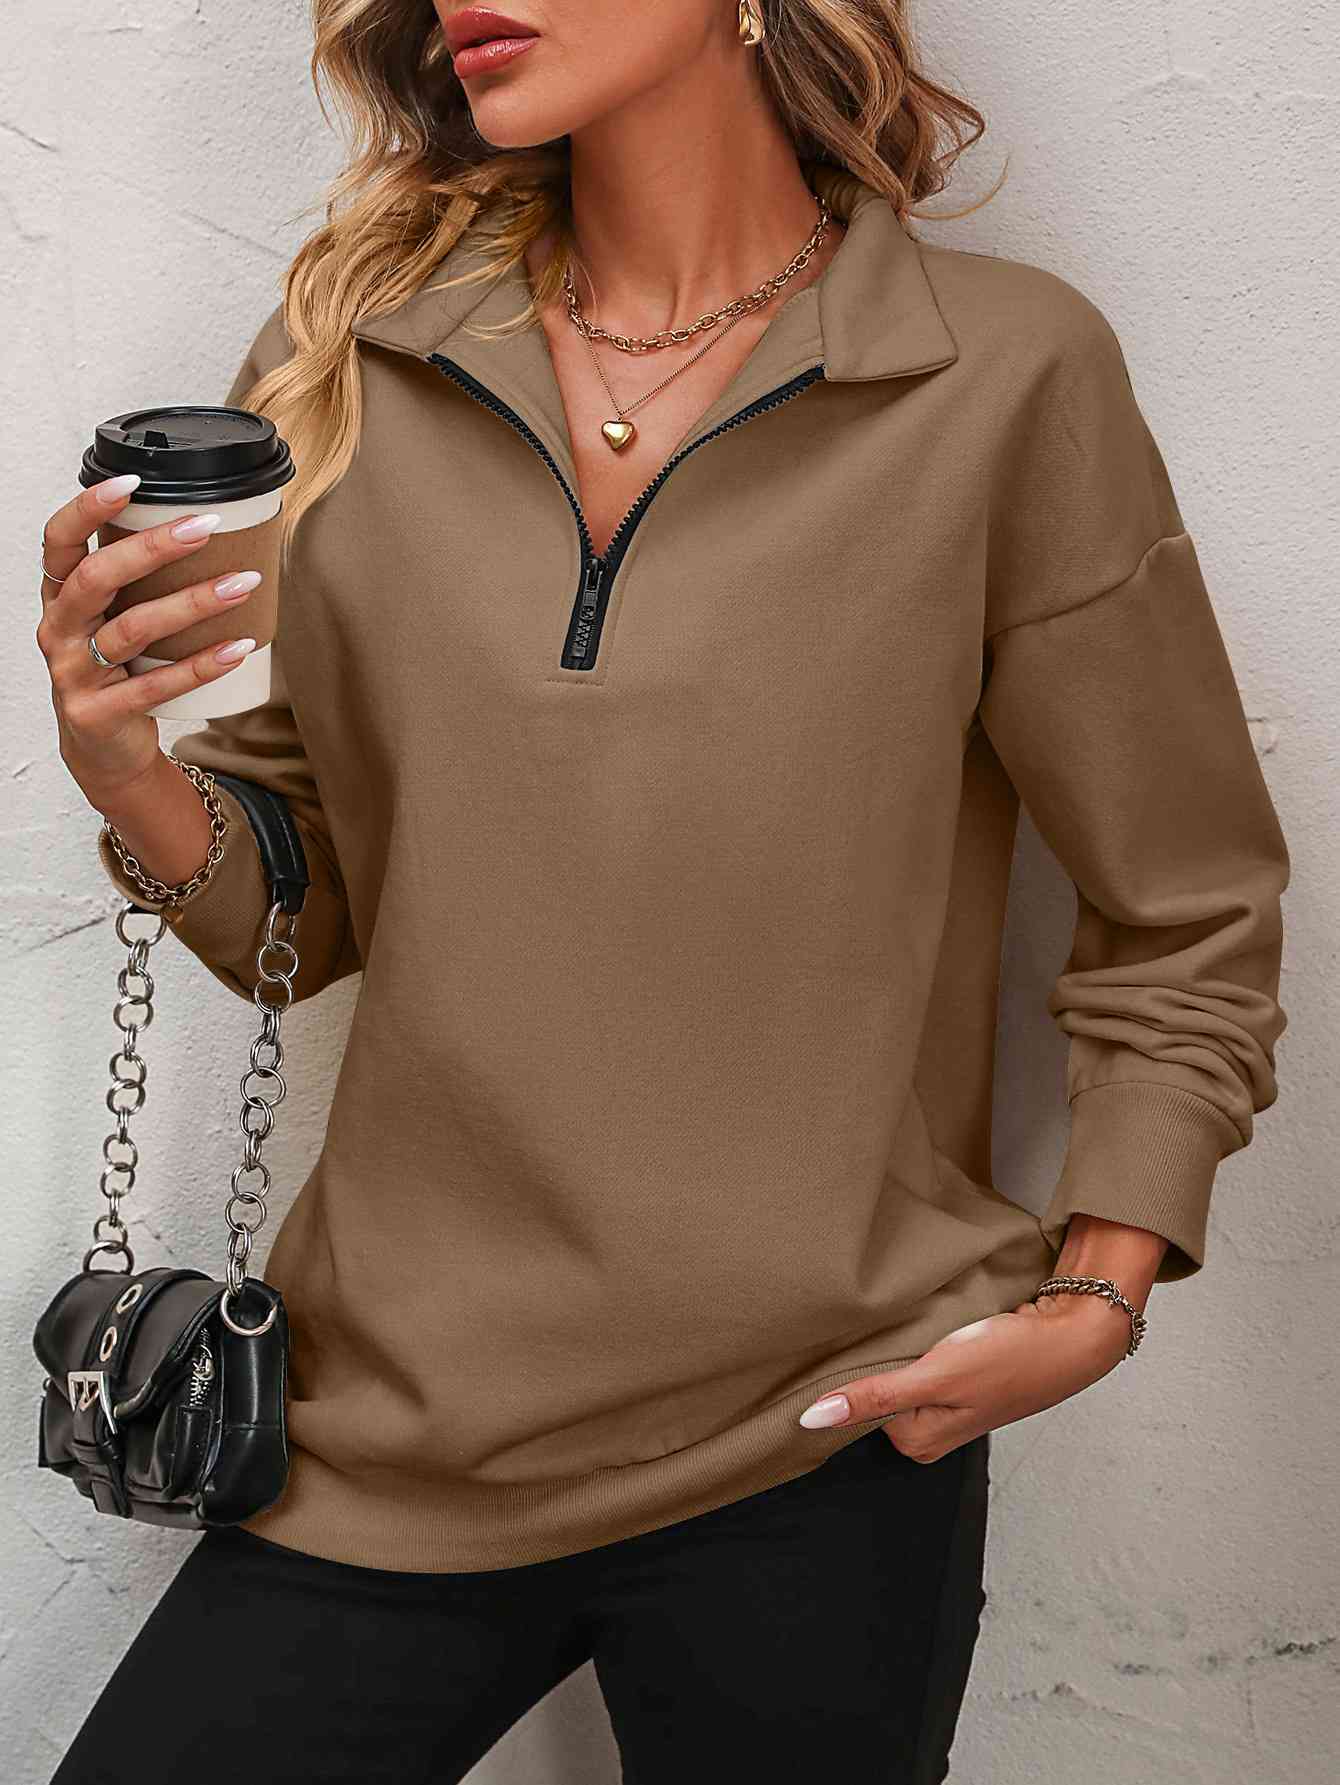 Zip-Up Dropped Shoulder Sweatshirt (7 Colors)  Krazy Heart Designs Boutique Camel S 